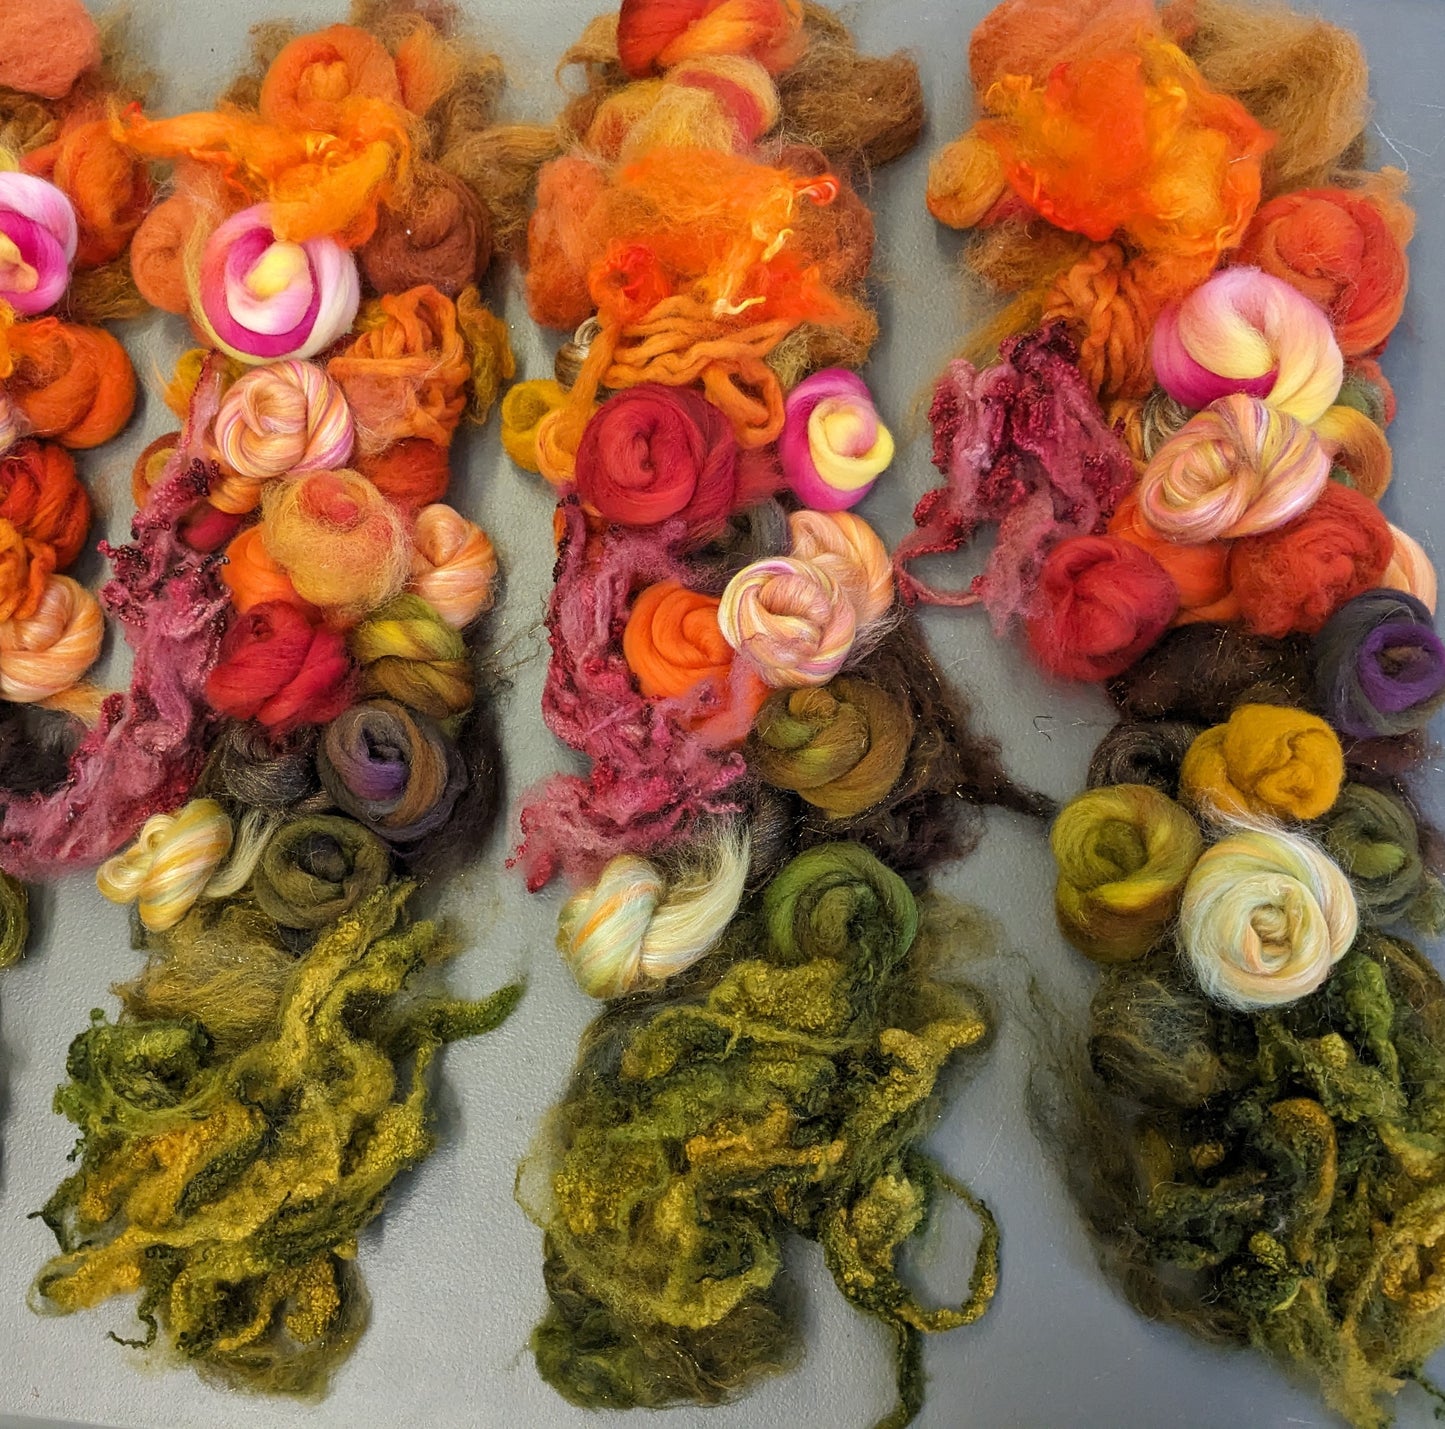 autumn fibres pack - hand dyed fleece /wool/custom blends